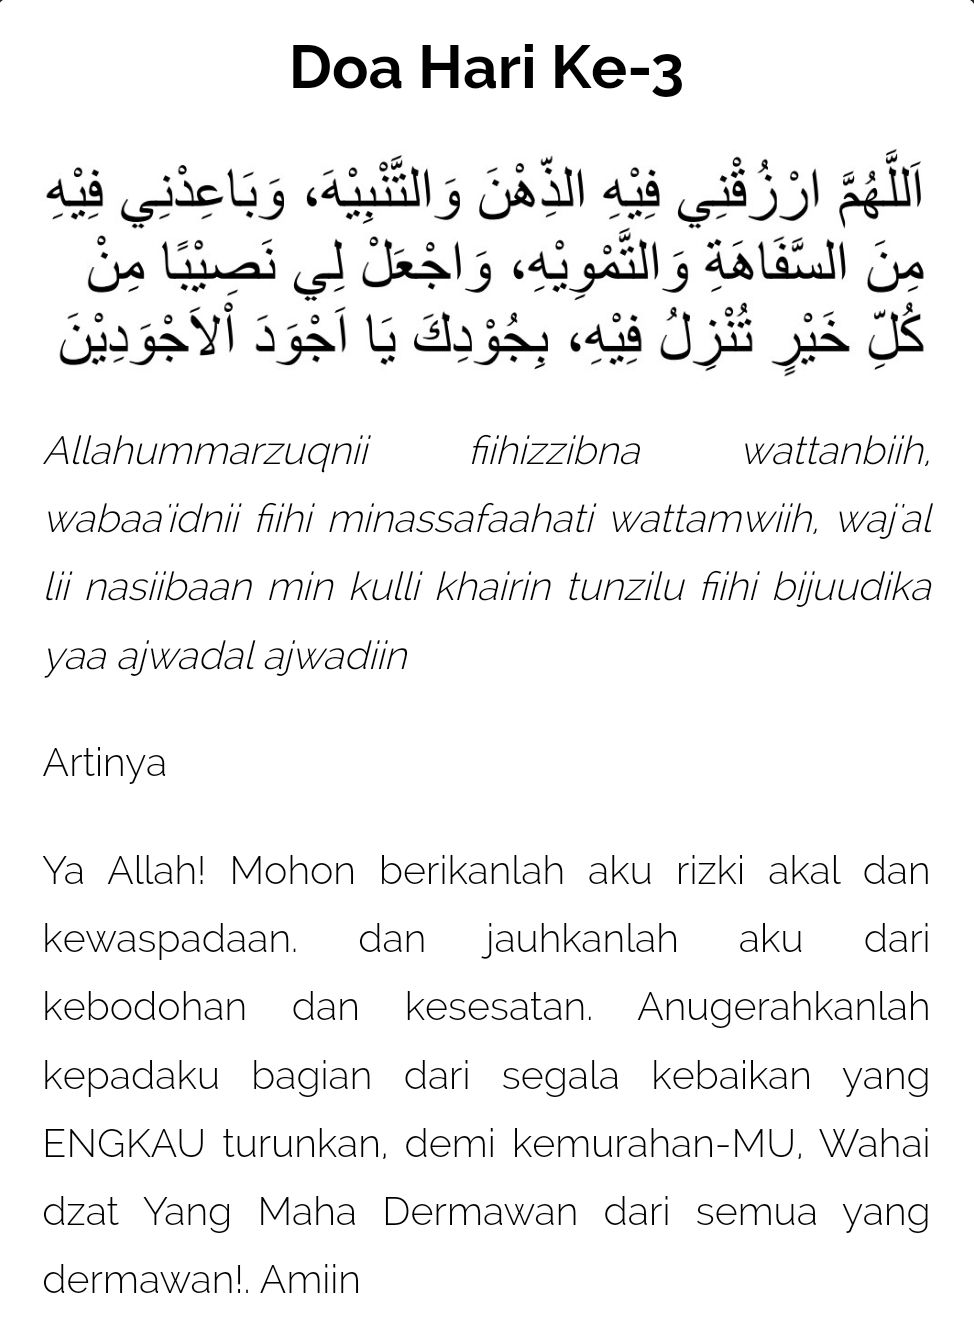 Doa Ramadhan hari ke-3